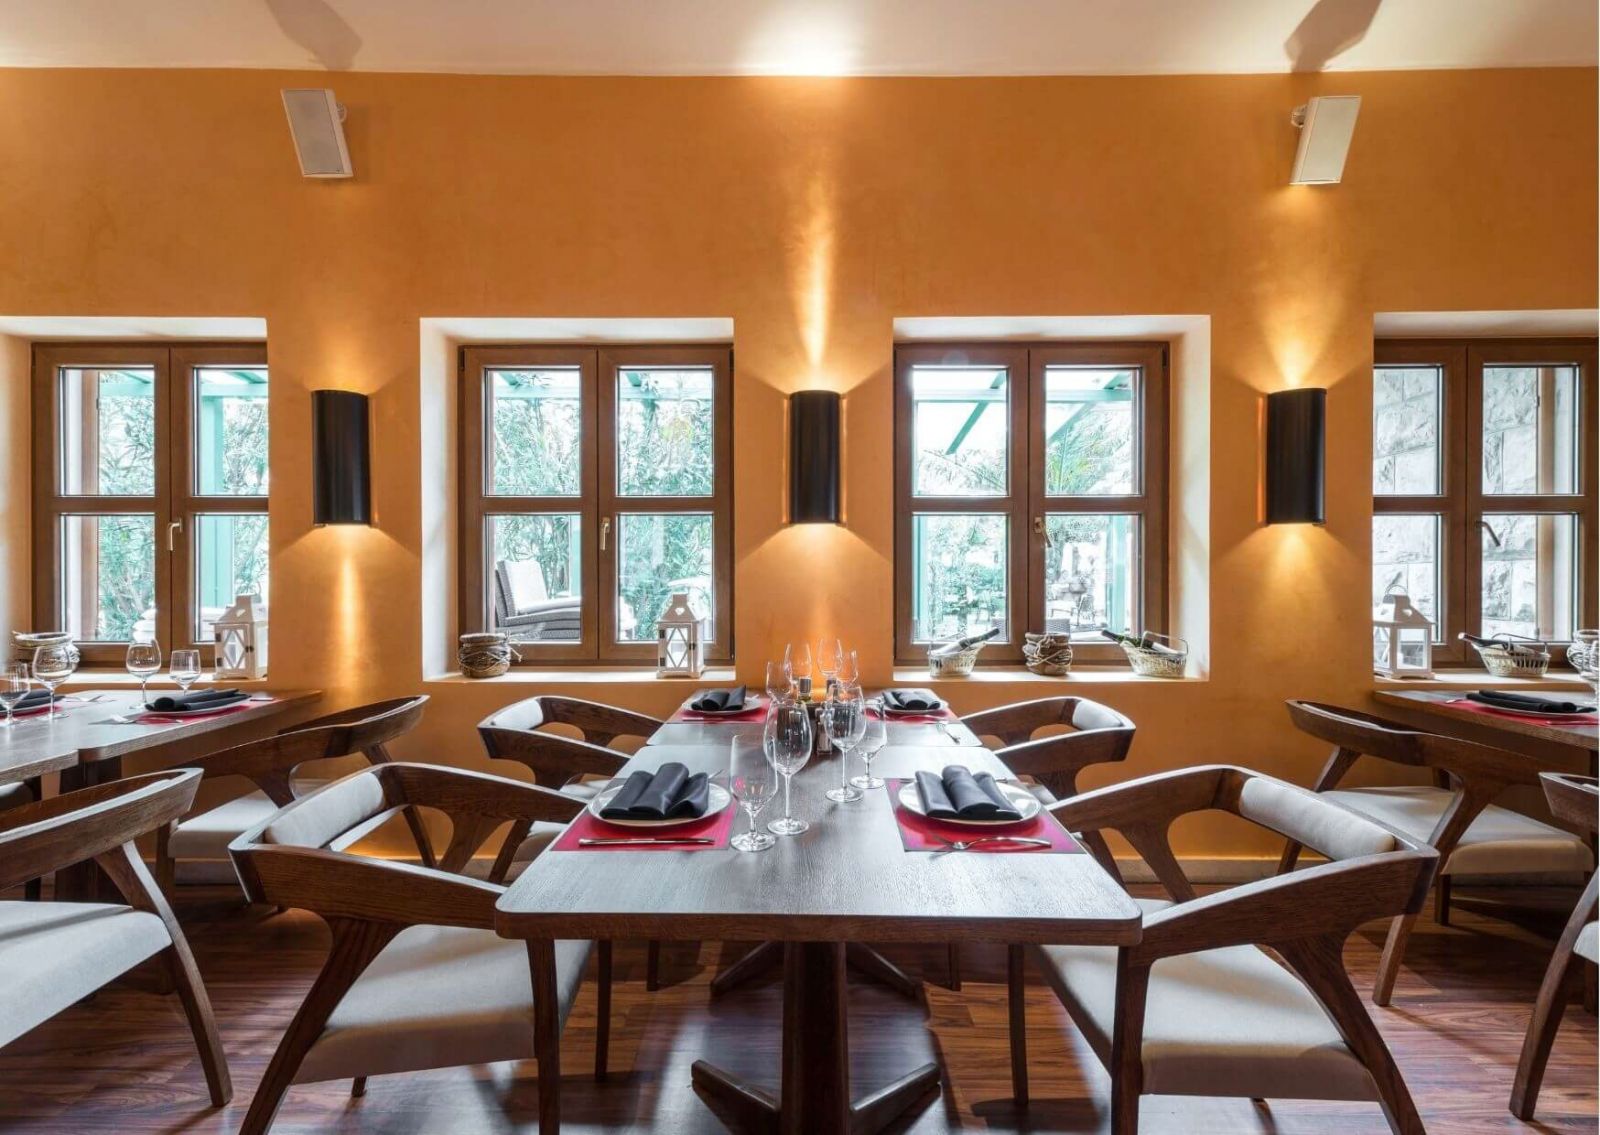 Đặc điểm của phong cách hiện đại Modernism Italy trong thiết kế nhà hàng